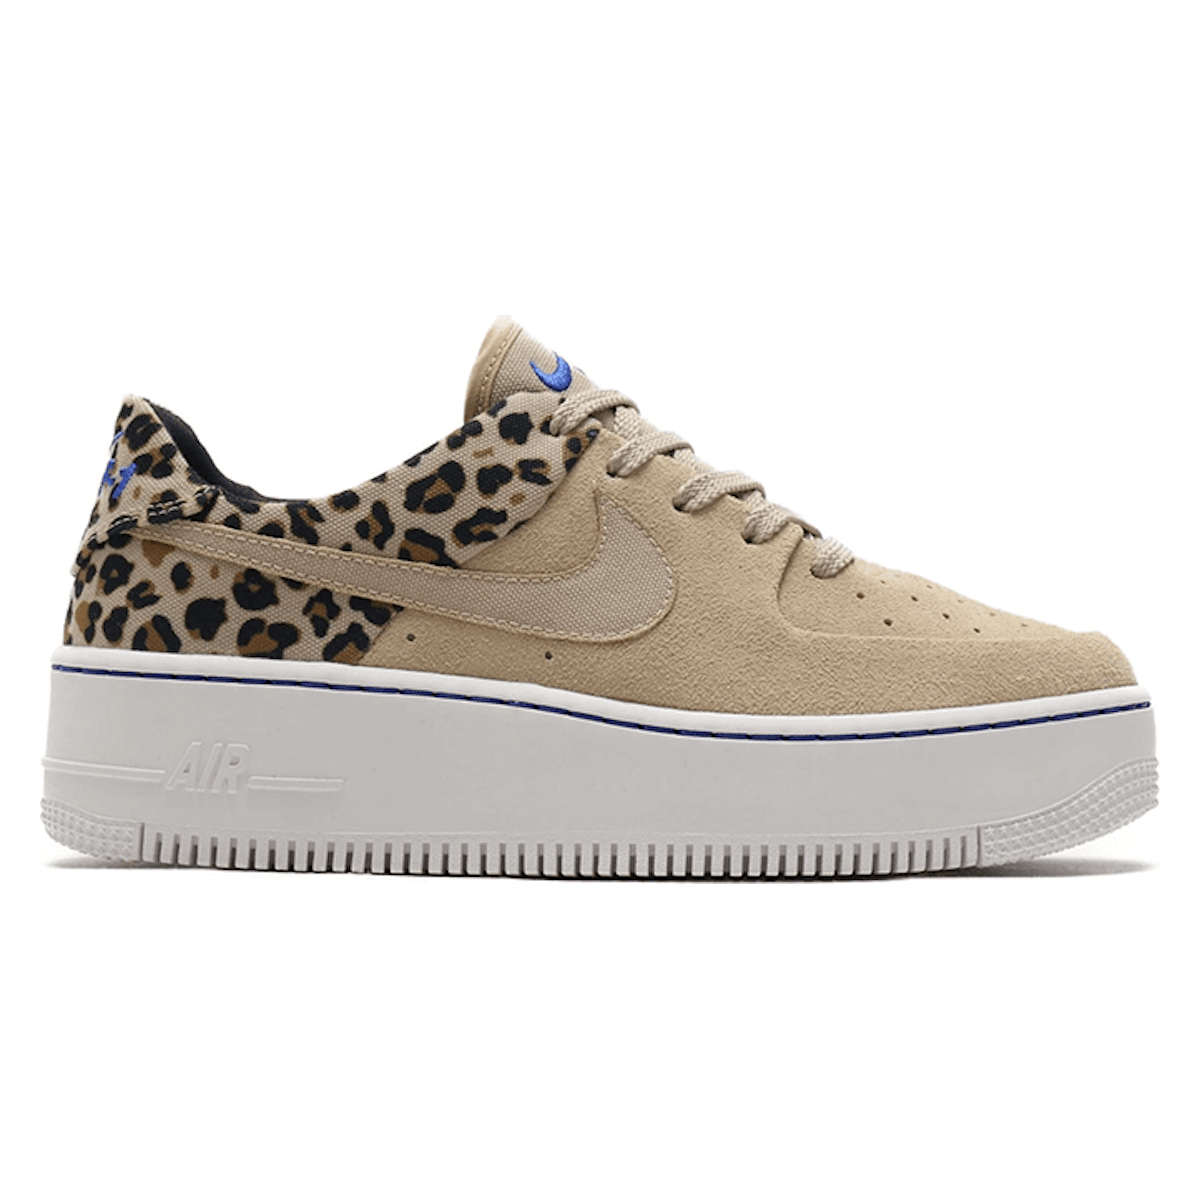 Nike Air Force 1 WMNS Sage Lo Premium "Leopard"